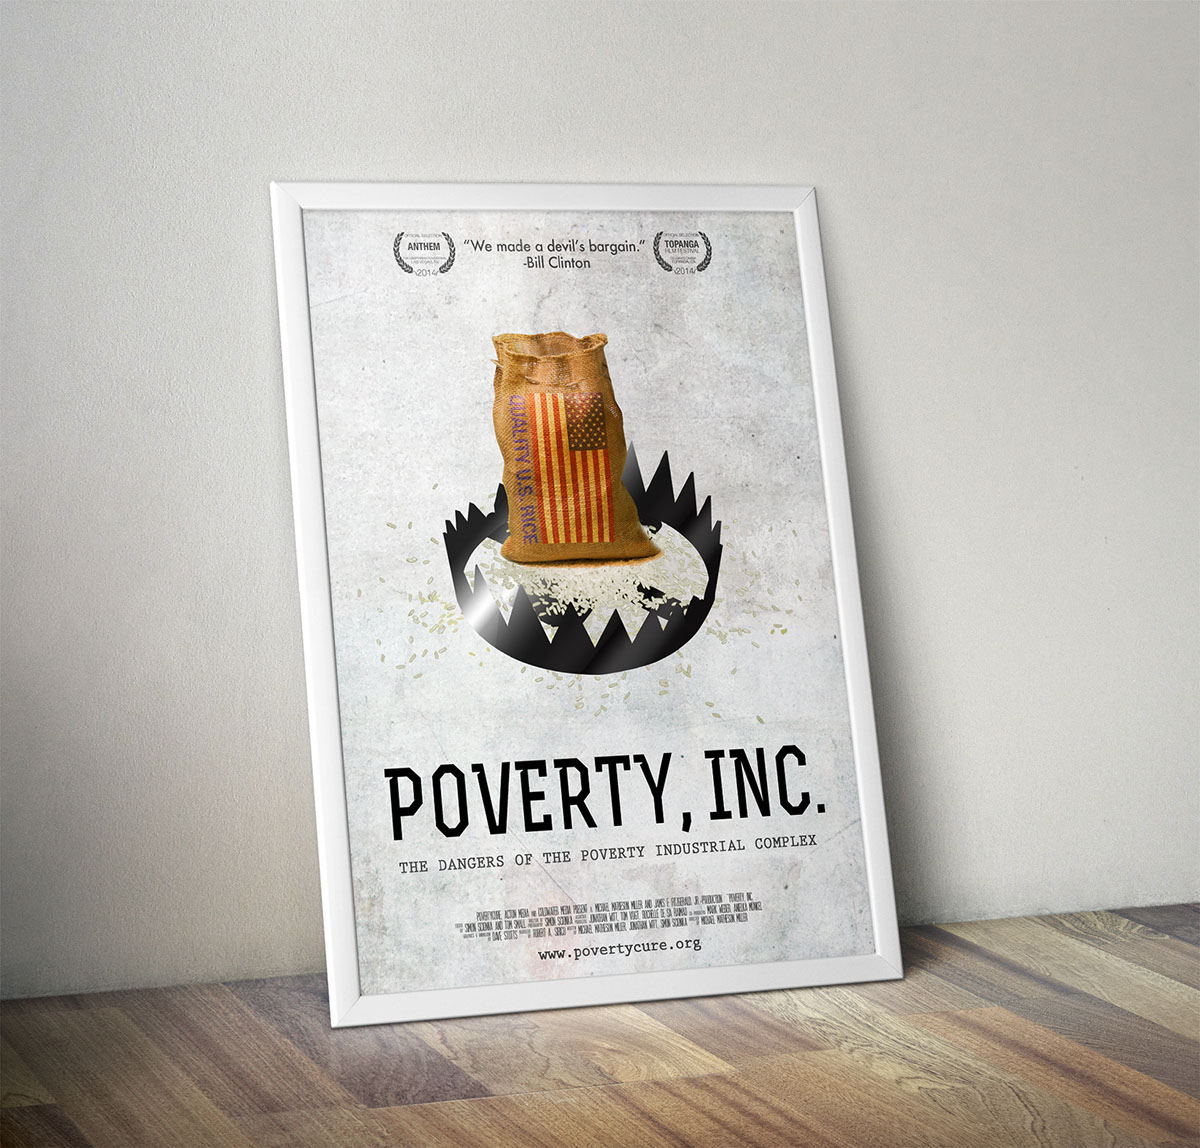 Documentary  movie poster Poverty poverty inc. Bill Clinton clinton Haiti trap Rice bear trap